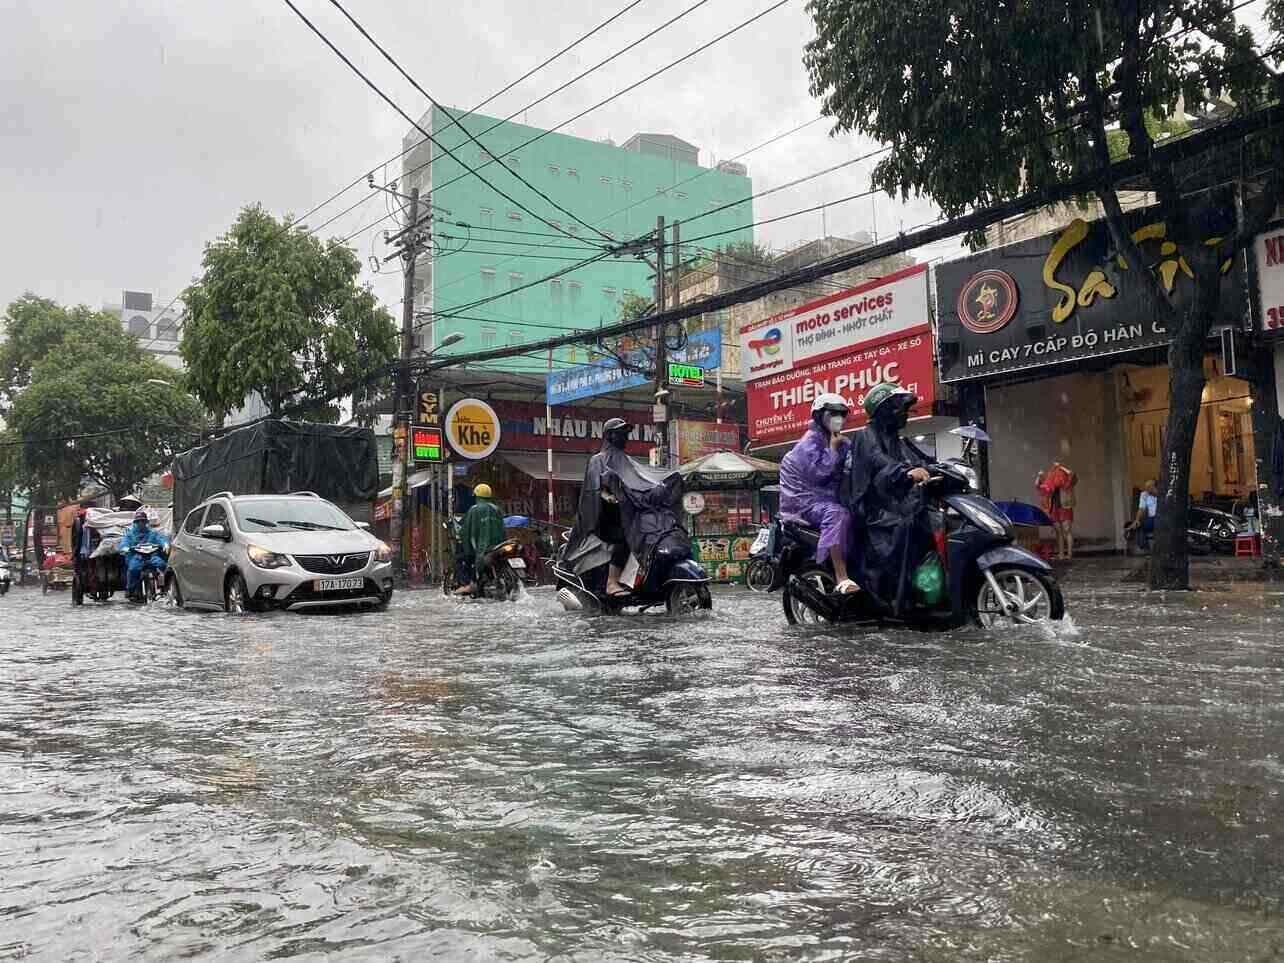 Theo ghi nhận của Lao Động, mưa bắt đầu từ khoảng 7h sáng, kéo dài đến 12h trưa. Nhiều khu vực như quận Gò Vấp, 12, Tân Phú, Tân Bình, Bình Thạnh, TP Thủ Đức... ngập sâu.